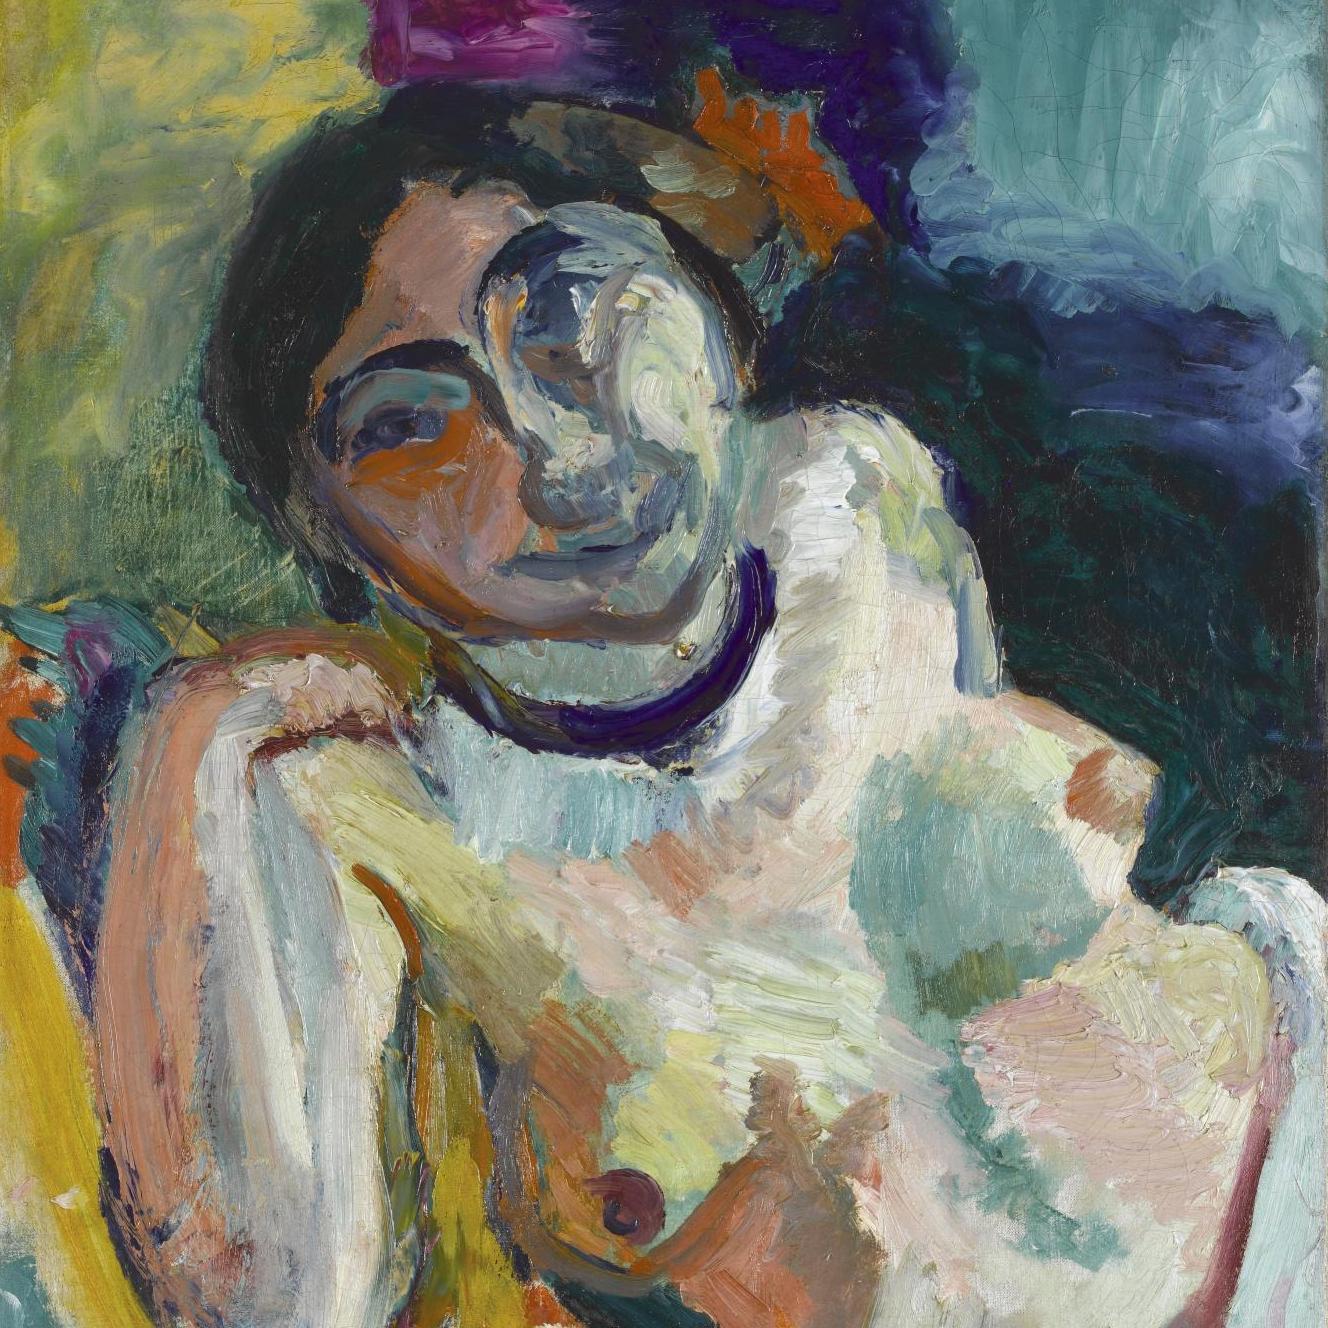 Matisse avant Matisse au musée du Cateau-Cambrésis - Expositions